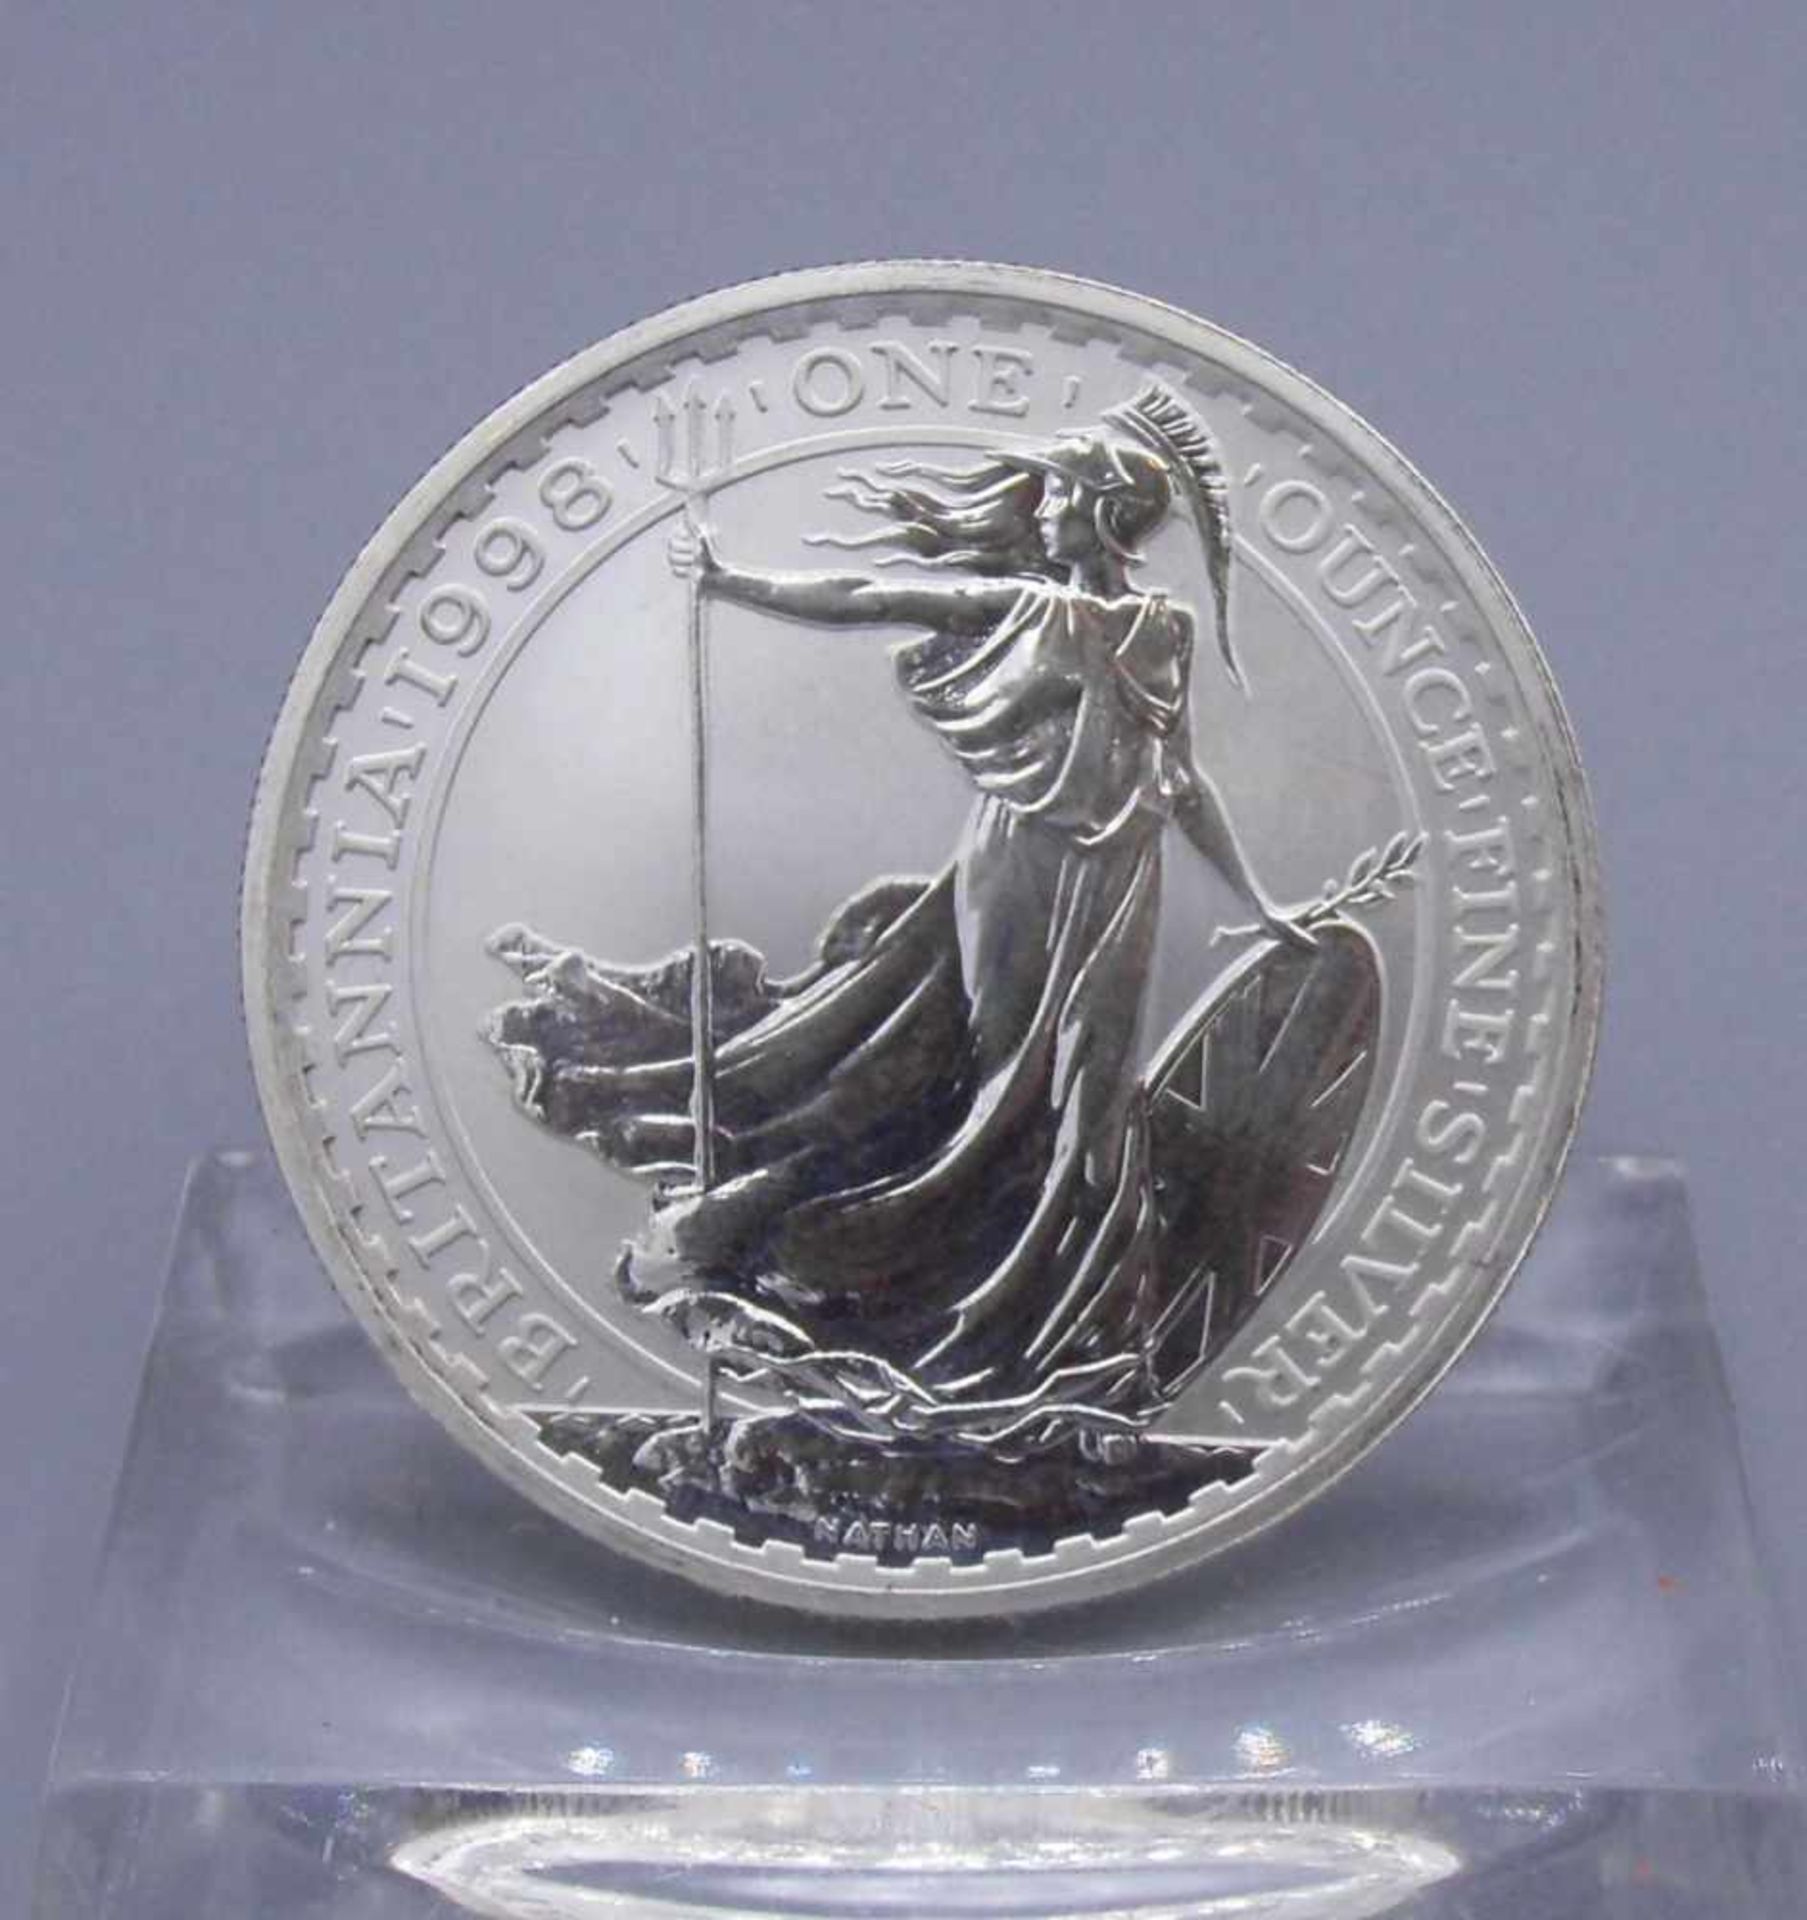 SILBERMÜNZE "2 POUNDS BRITANNIA" / coin, Silber (32,5 g). Avers: Erhaben geprägte Büste Königin